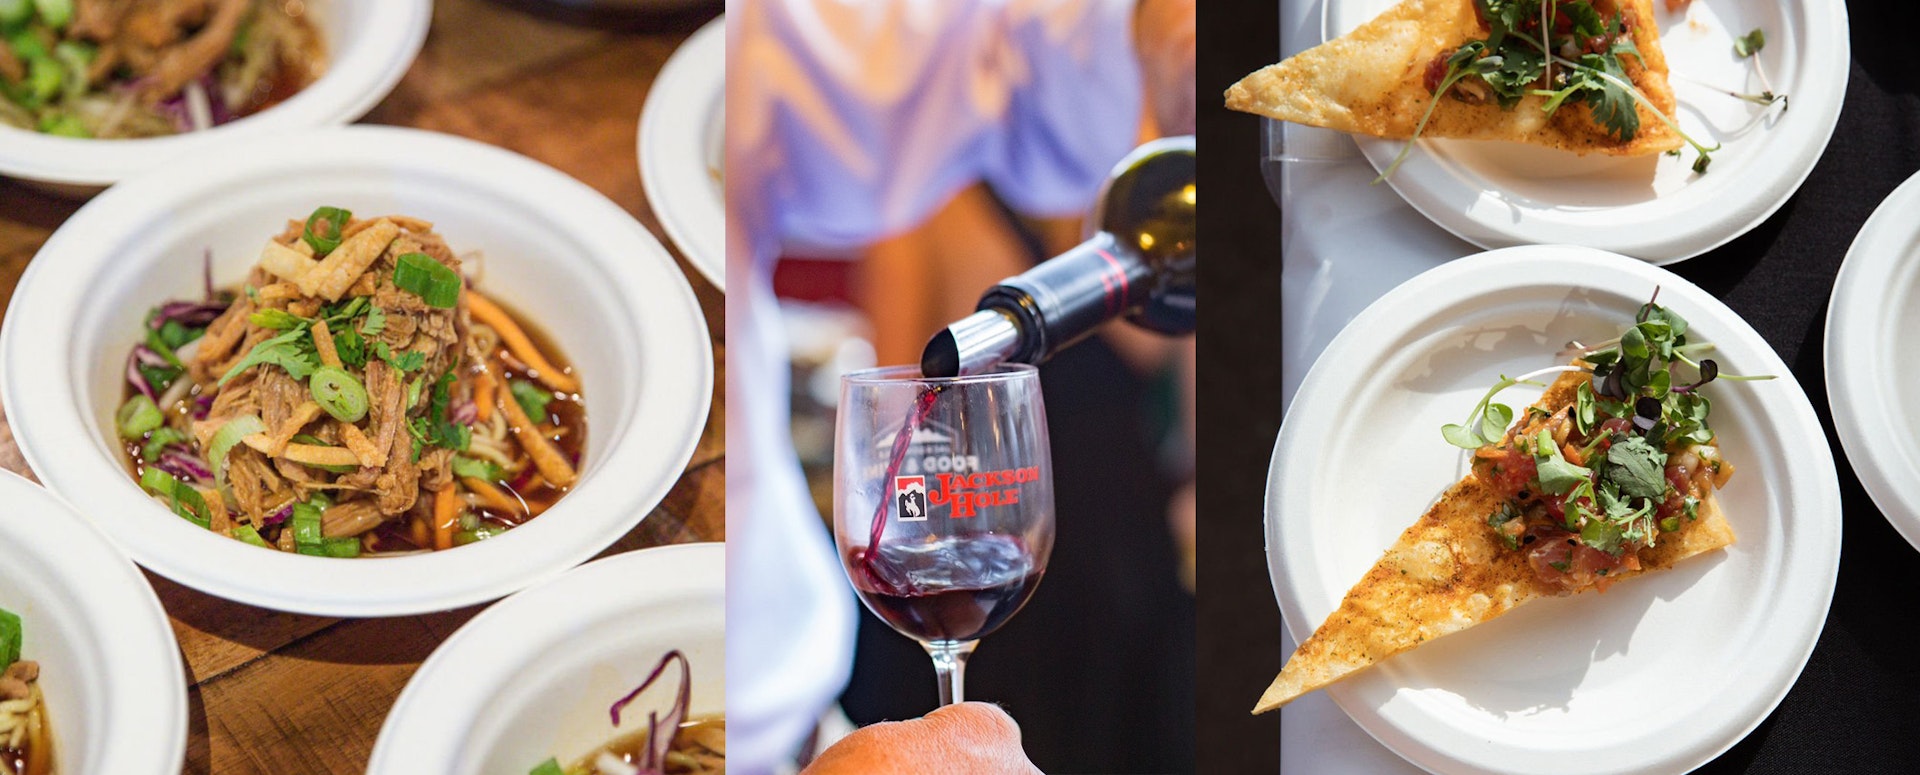 food and wine at Taste of Jackson Hole